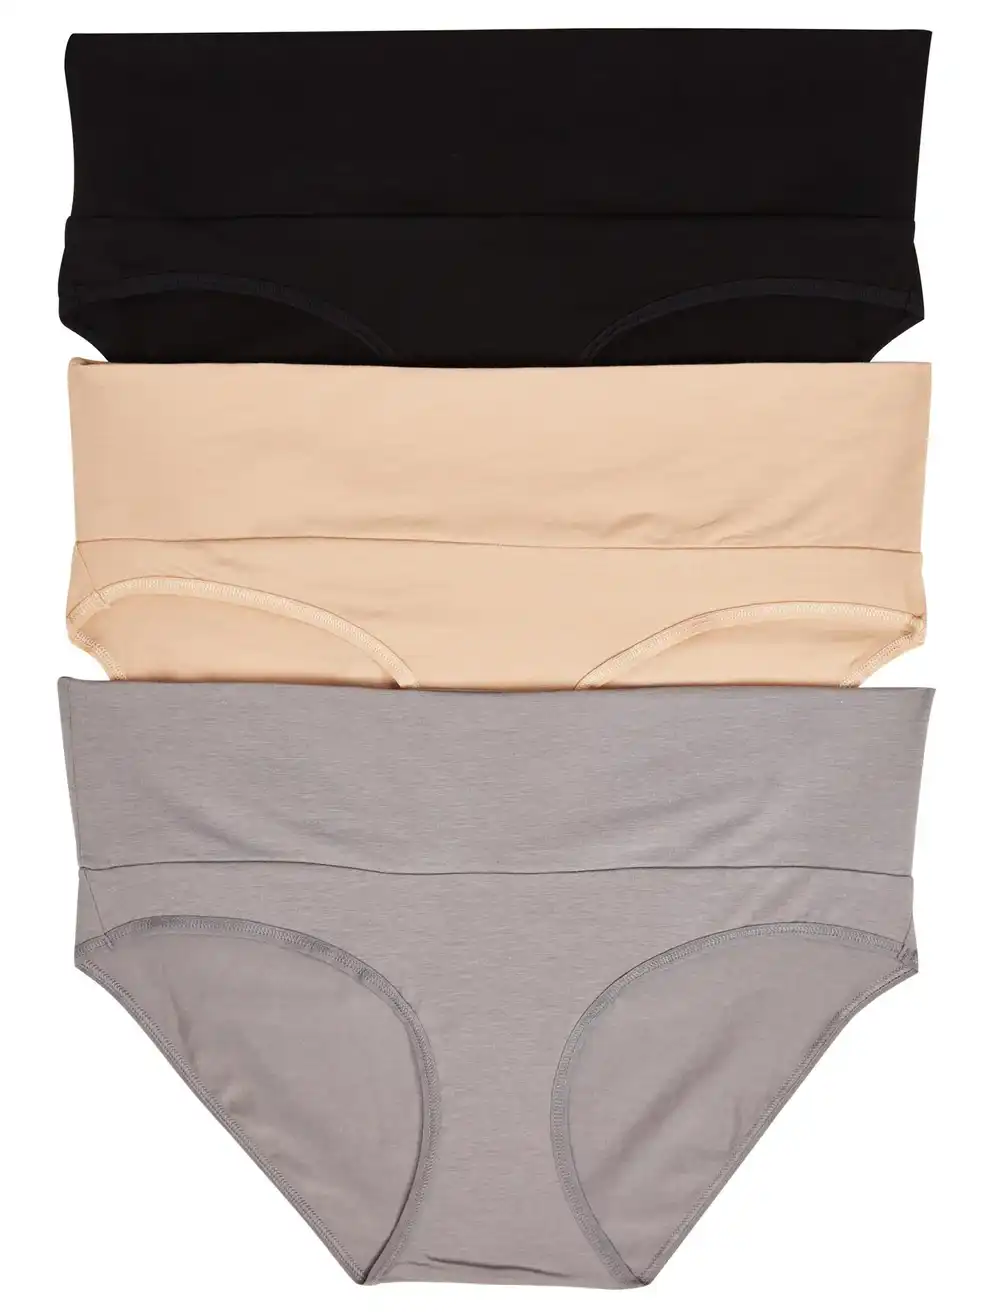 Basics Incontinence & Postpartum Underwear For Women